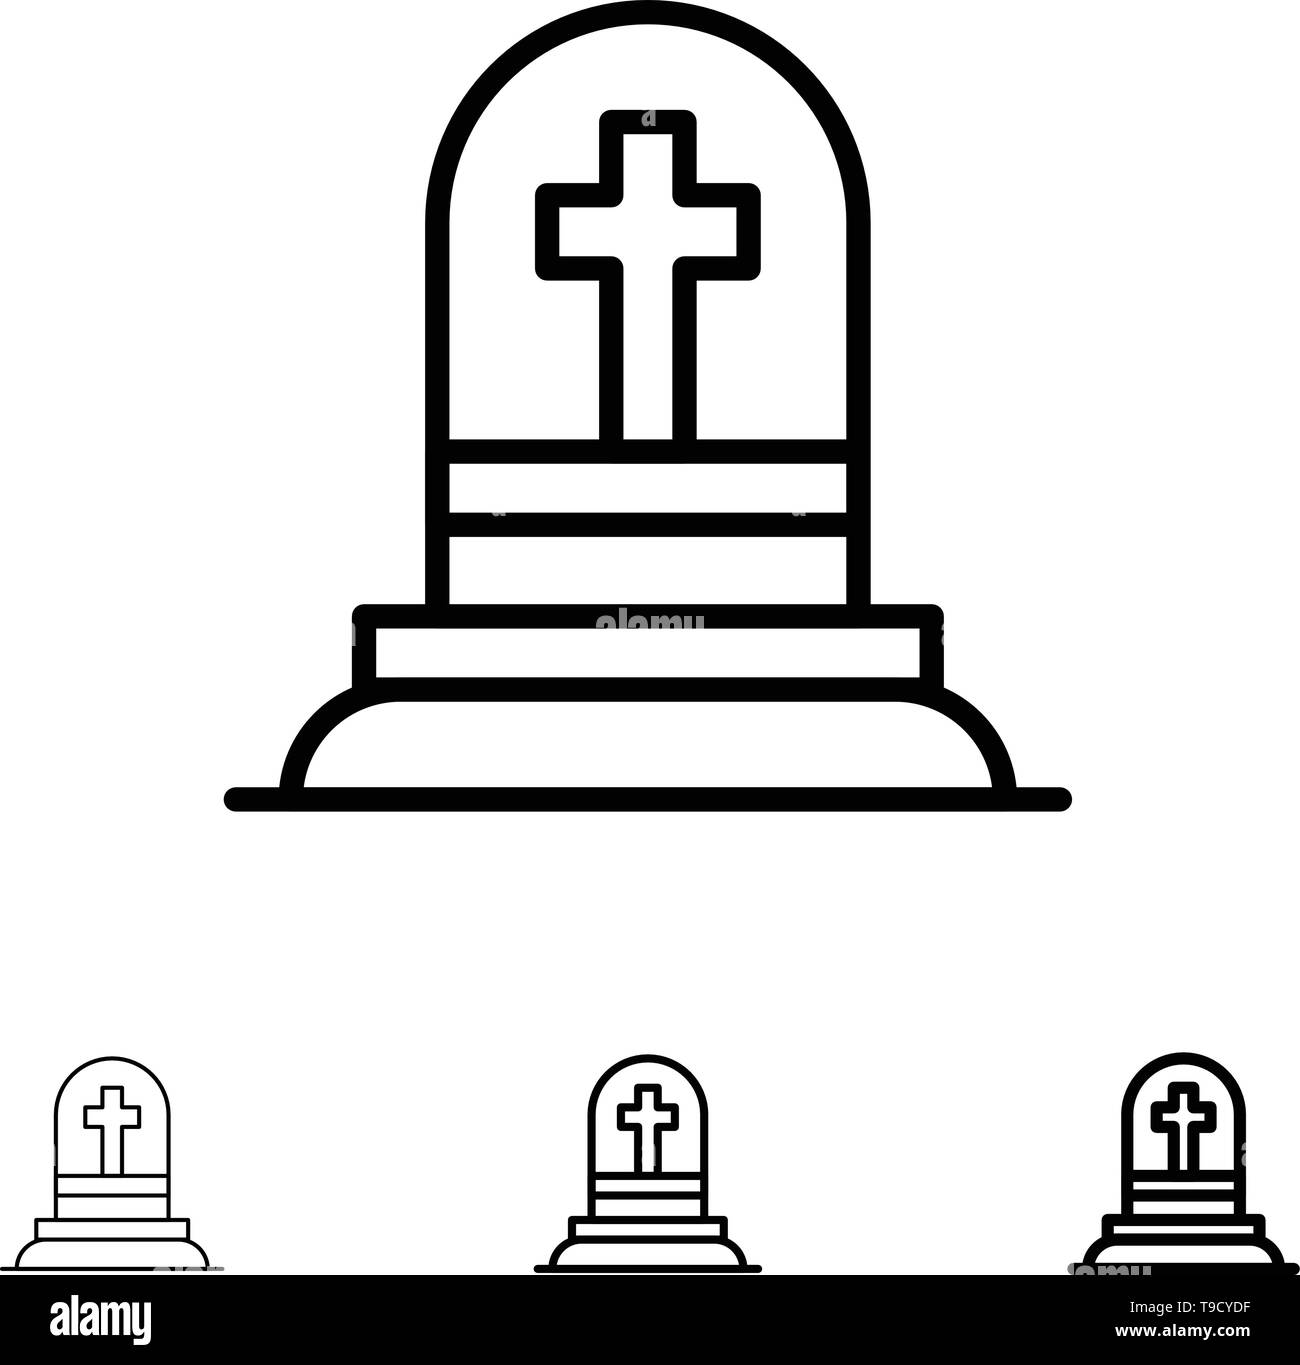 Death, Grave, Gravestone, Rip Bold and thin black line icon set Stock Vector